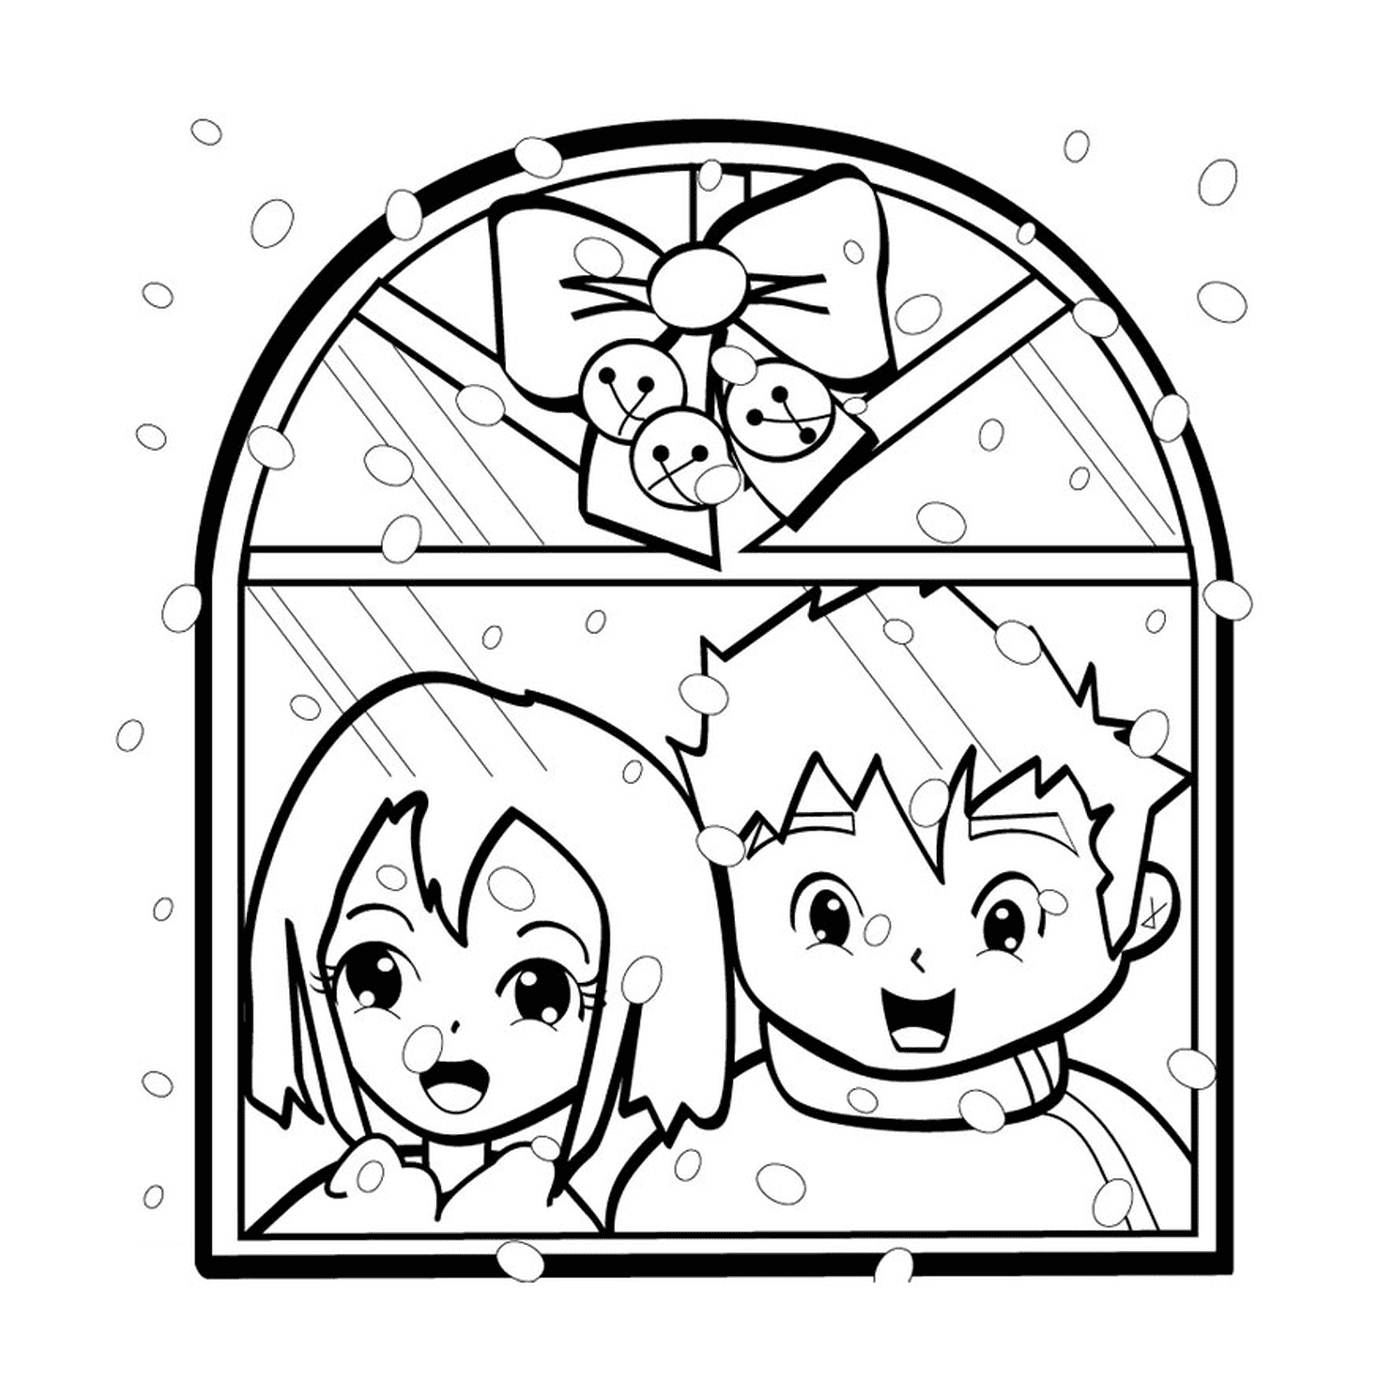   enfants devant fenêtre 